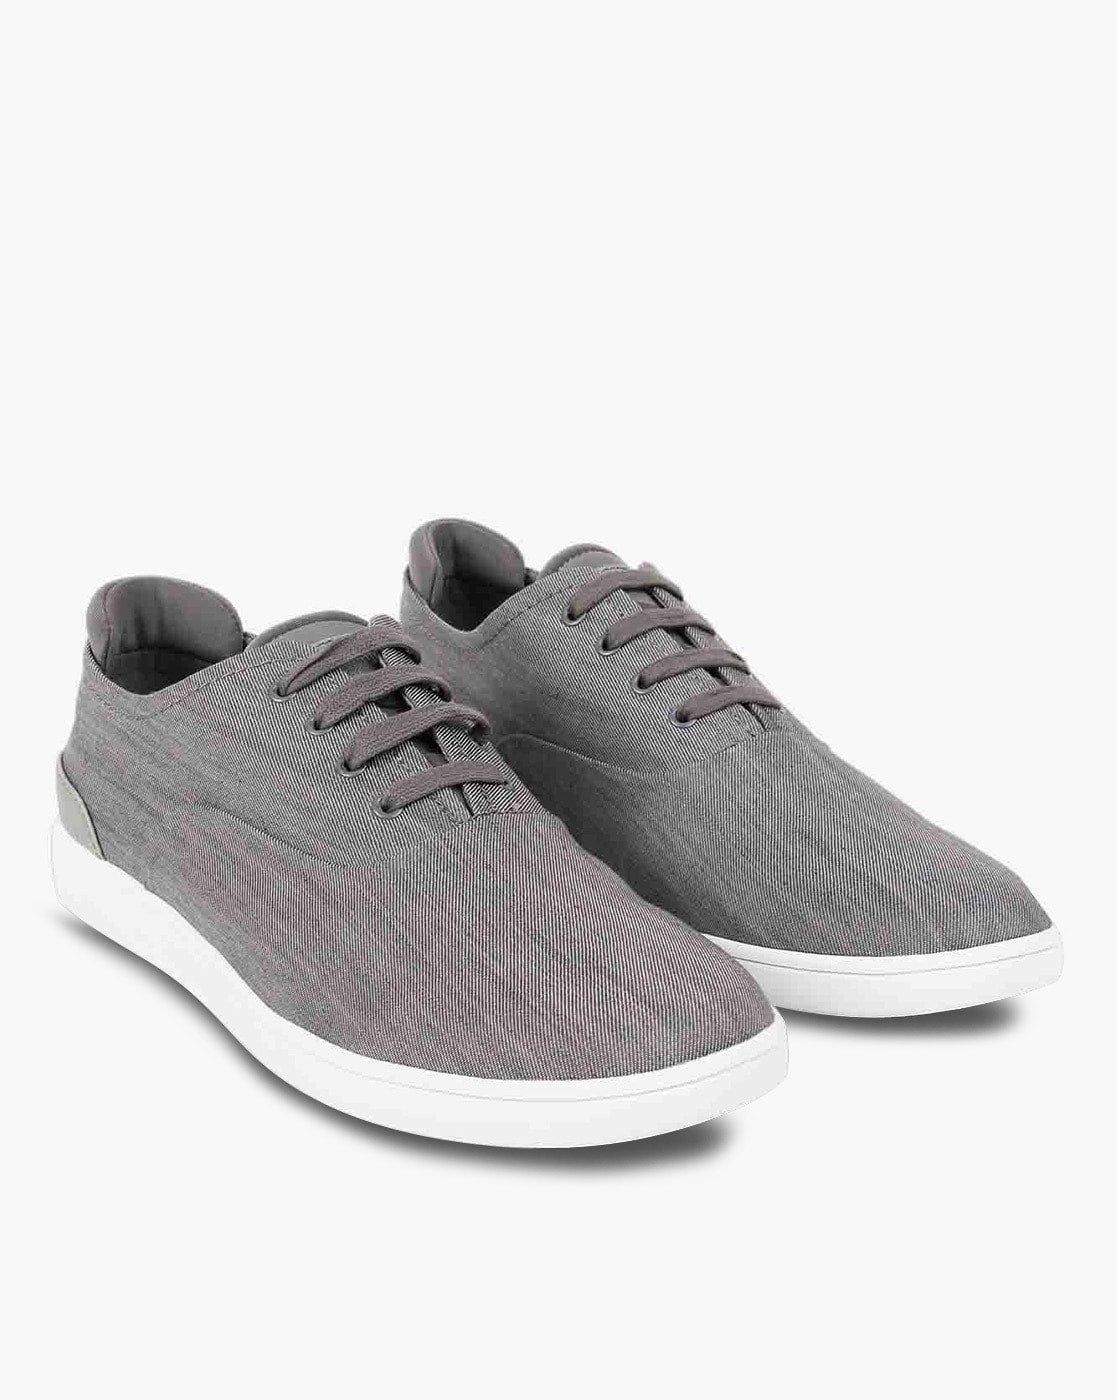 steve madden sneakers gray